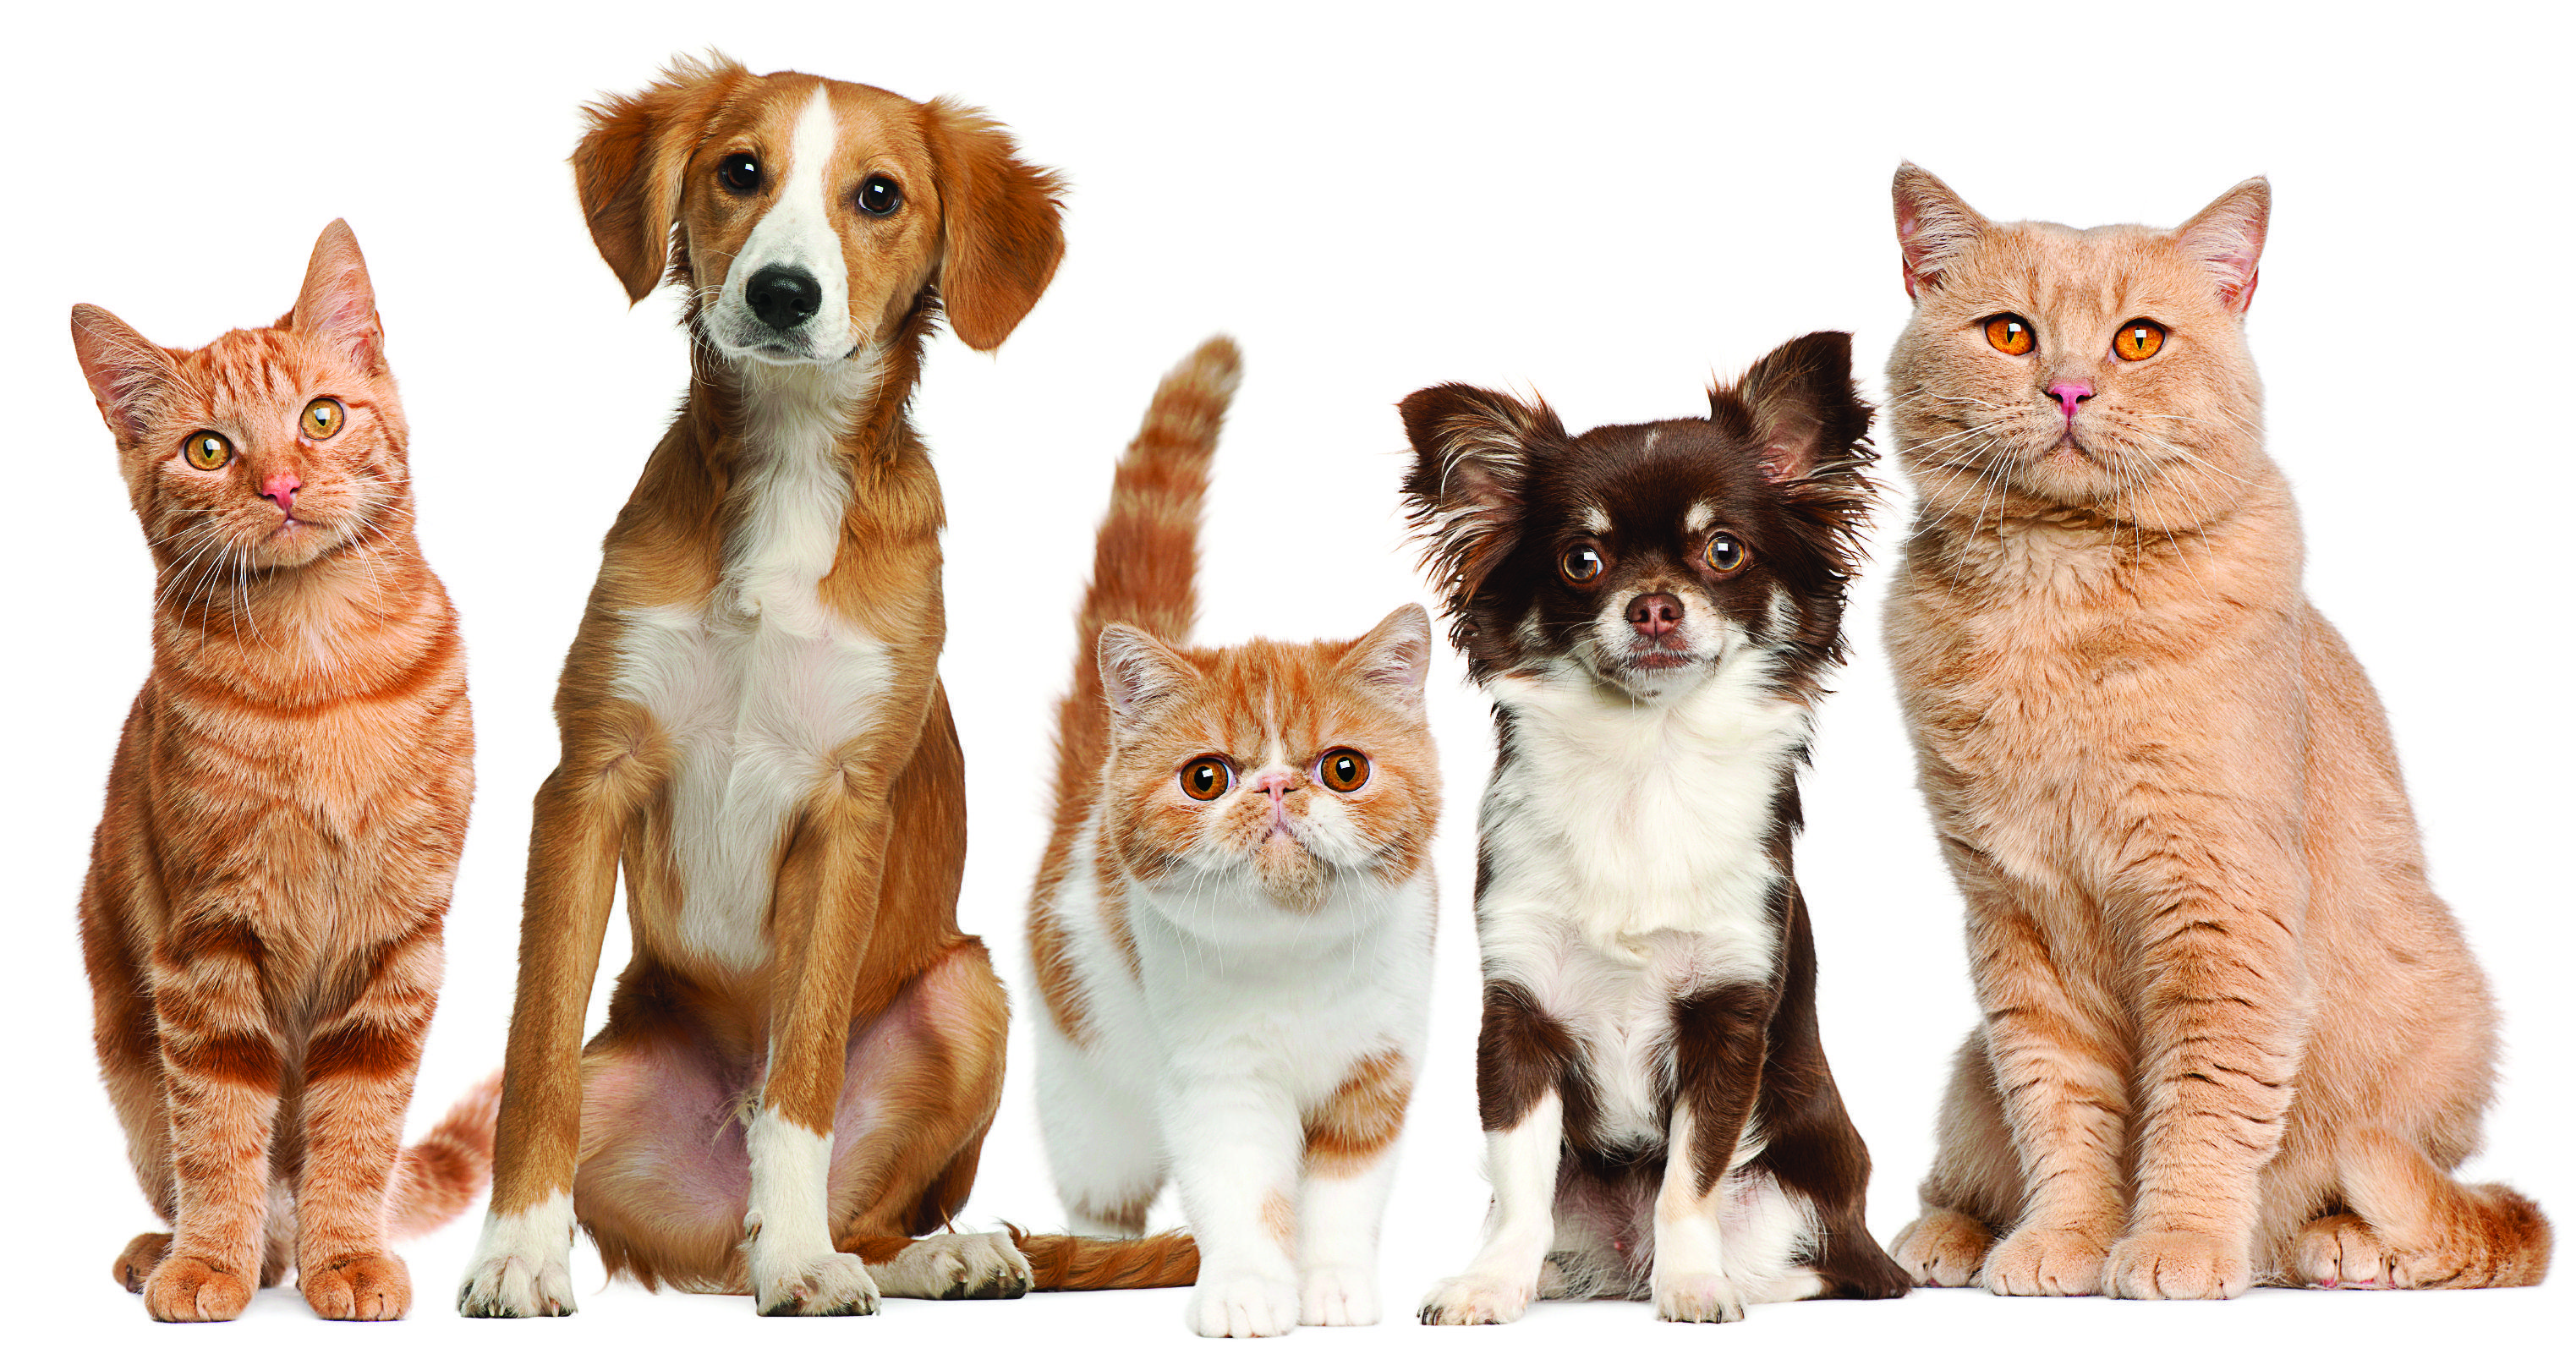 Pets Wallpaper, Adorable HDQ Background of Pets, 39 Pets HQFX